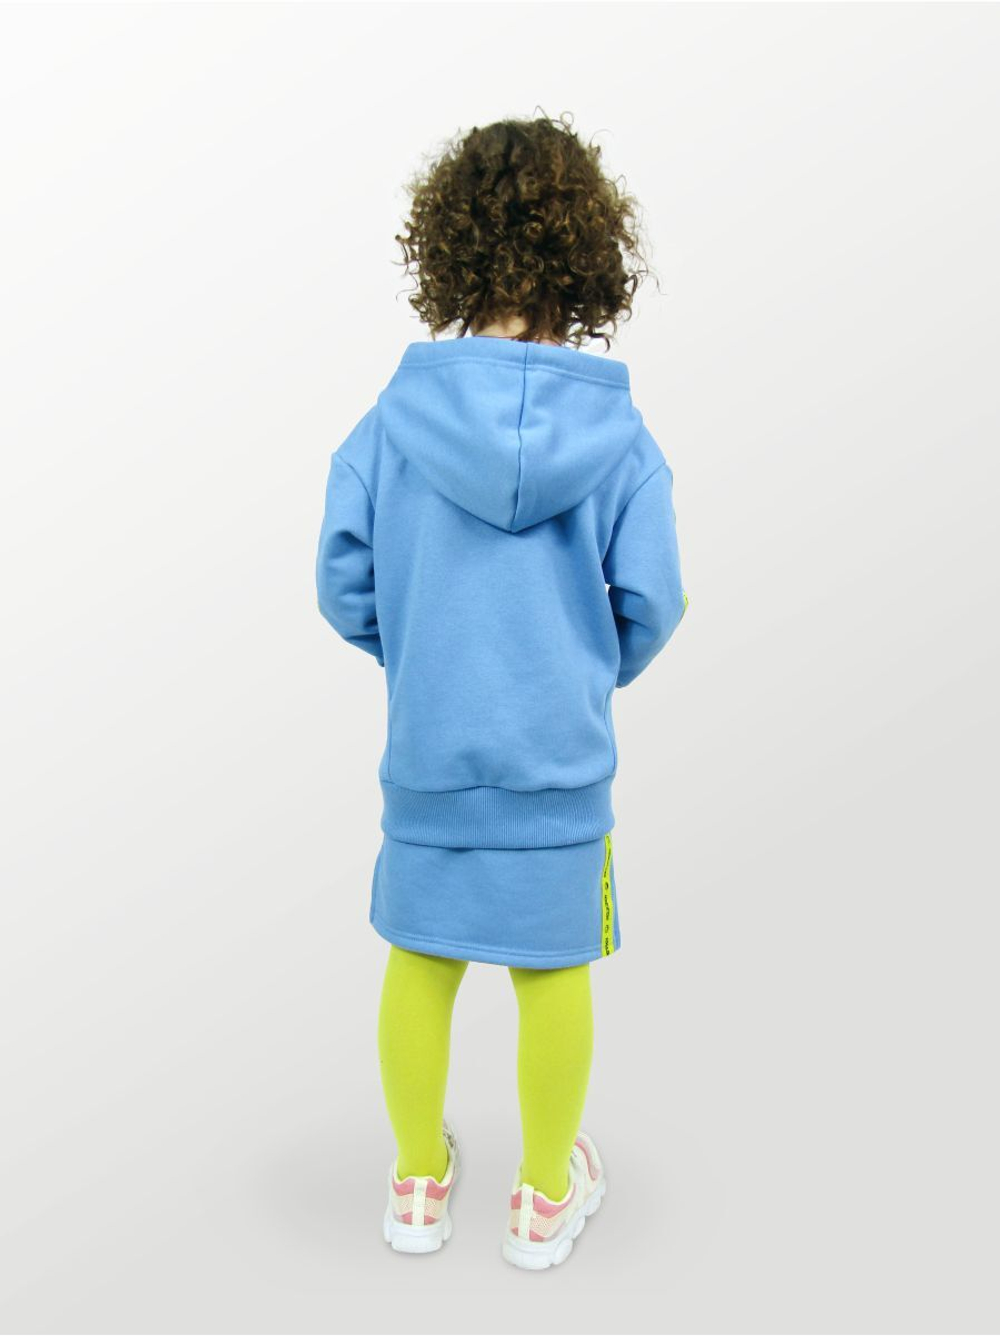 Худи для детей, модель №1, рост 116 см, голубой